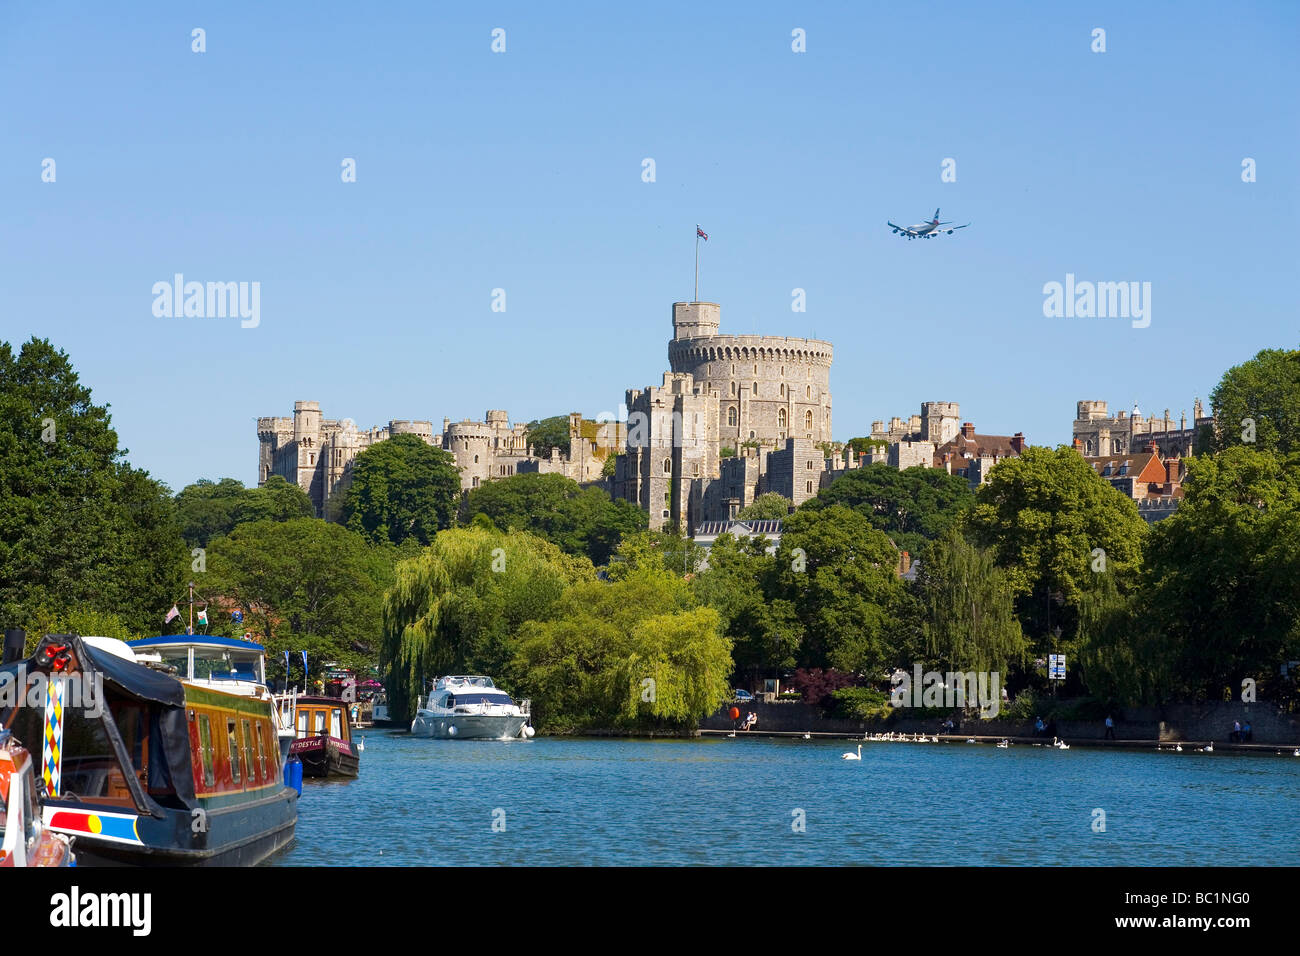 Windsor Castle England mit BA-Jet auf Landung Weg zum Flughafen Heathrow. (Clck unterhalb Daumen, 14 andere schönen Aufnahmen ohne Flugzeuge zu sehen!) Stockfoto